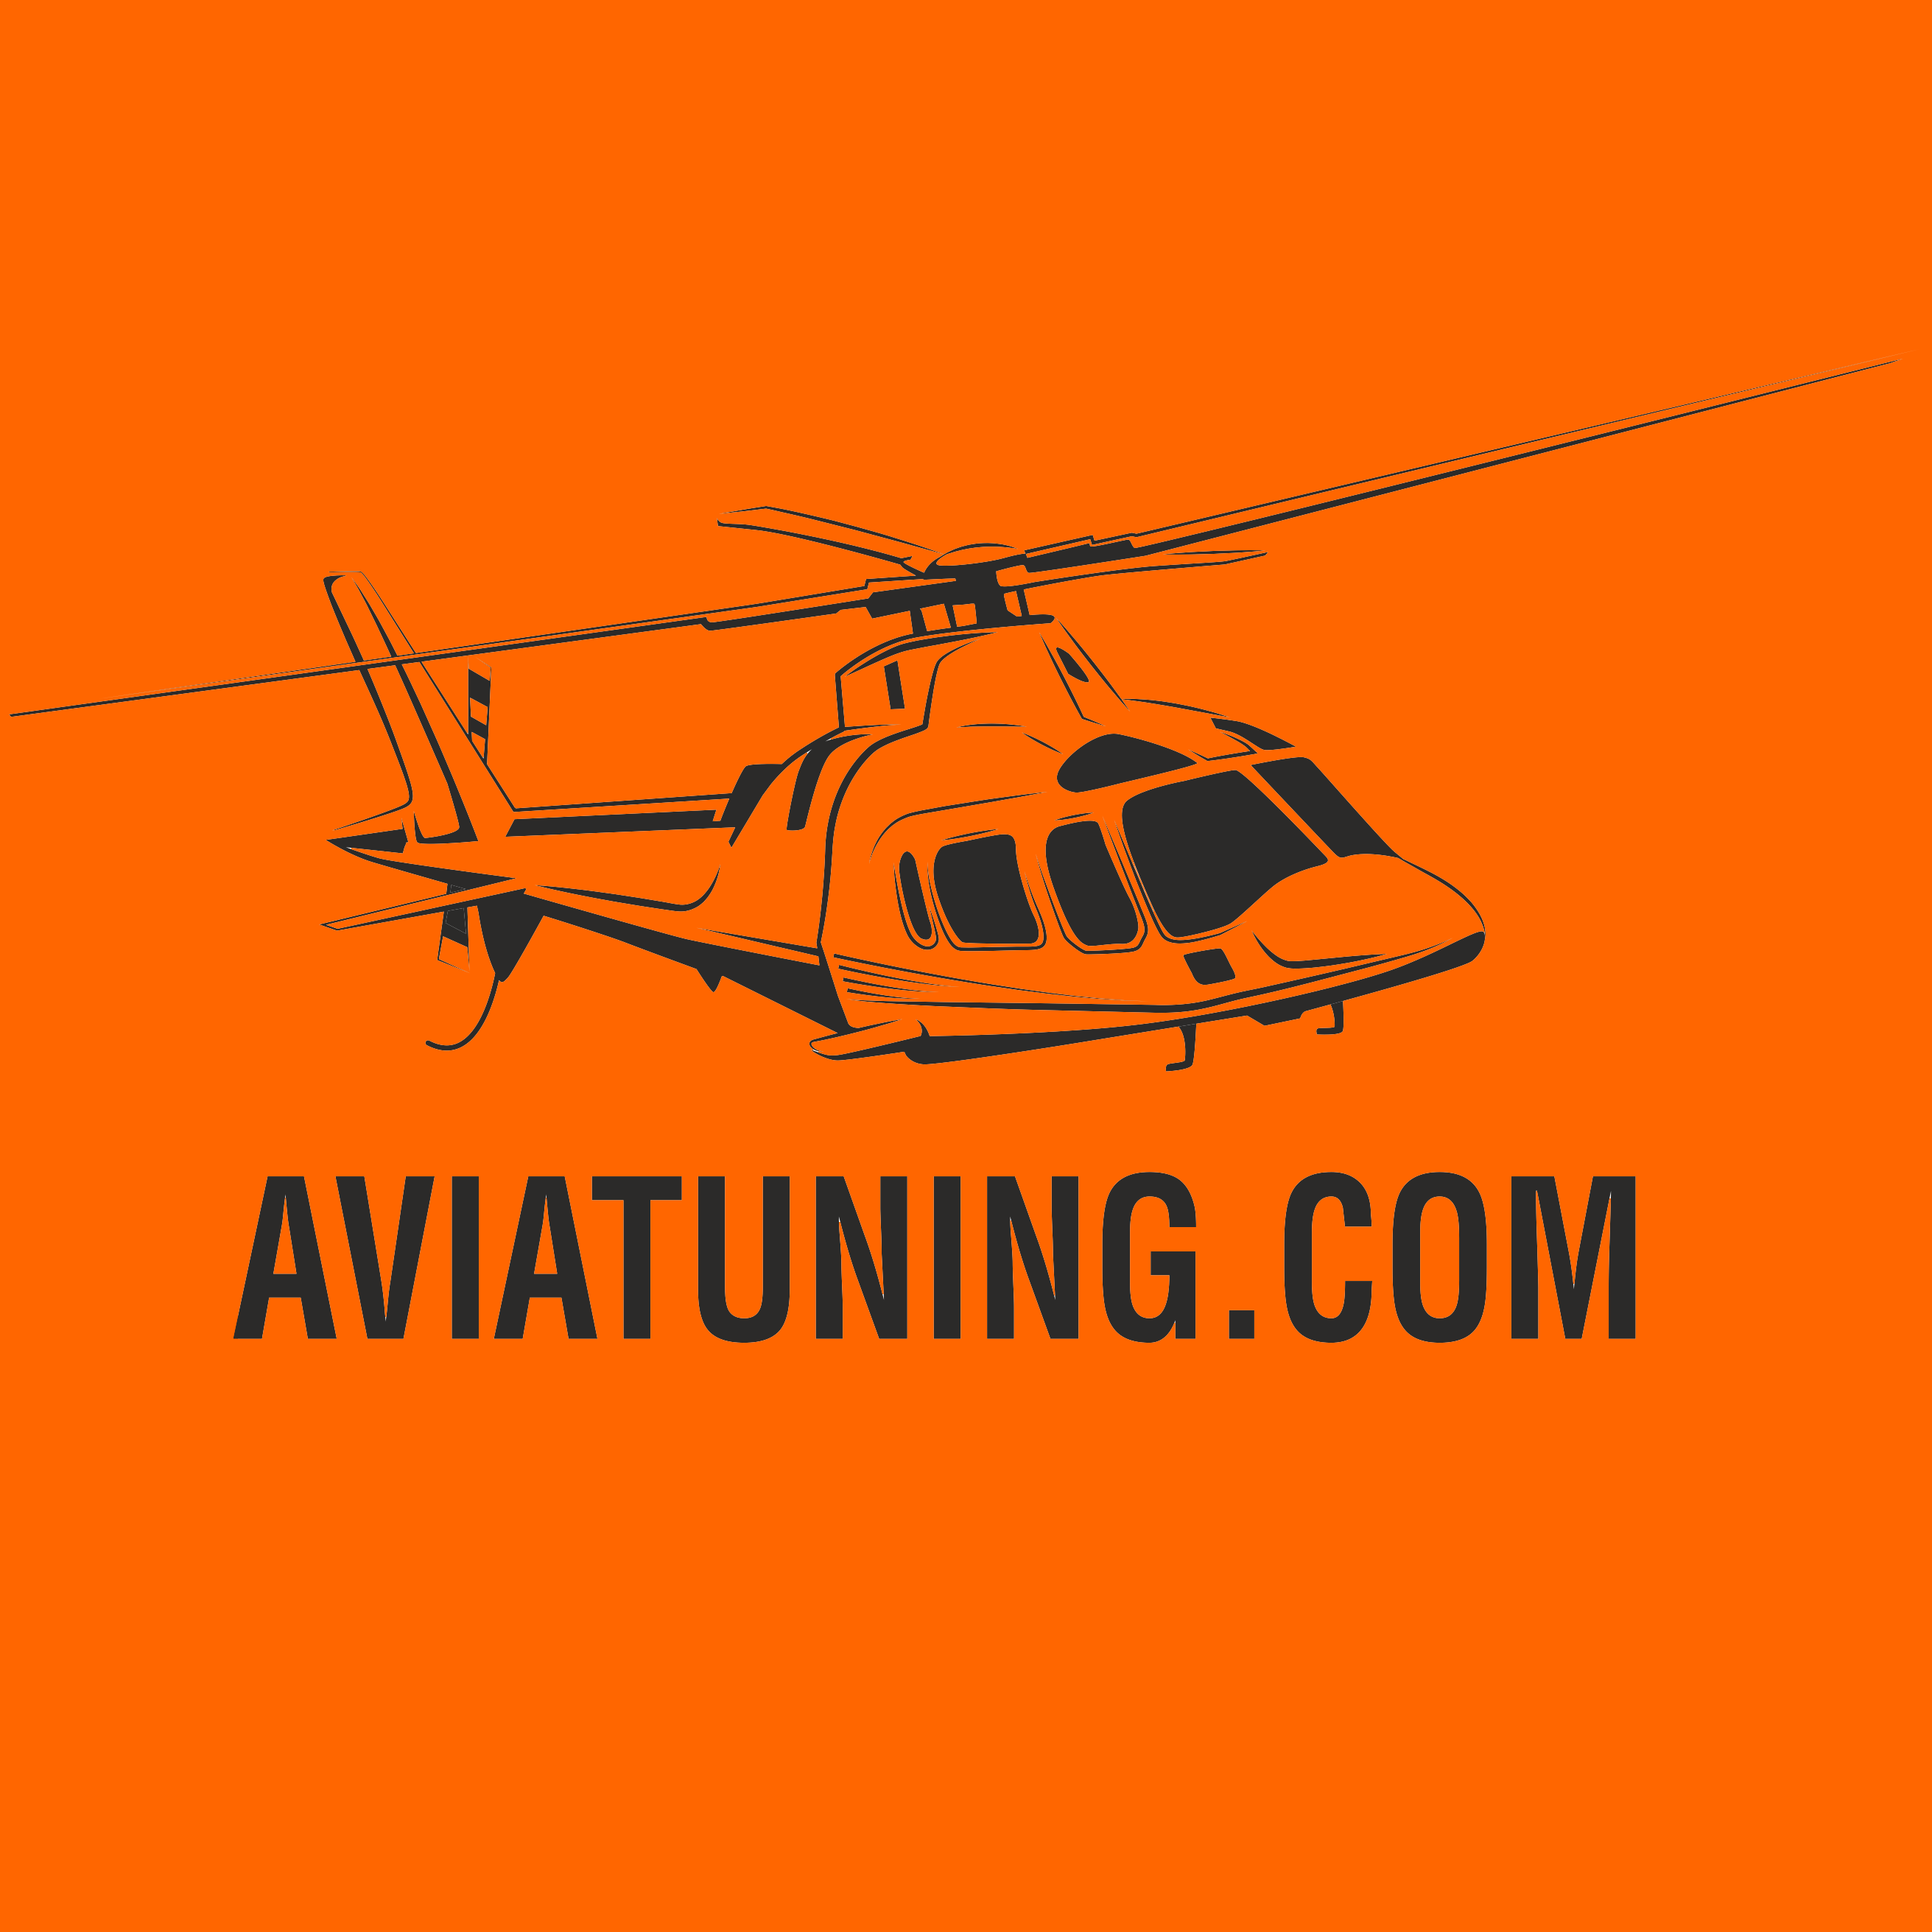 aviatuning.com